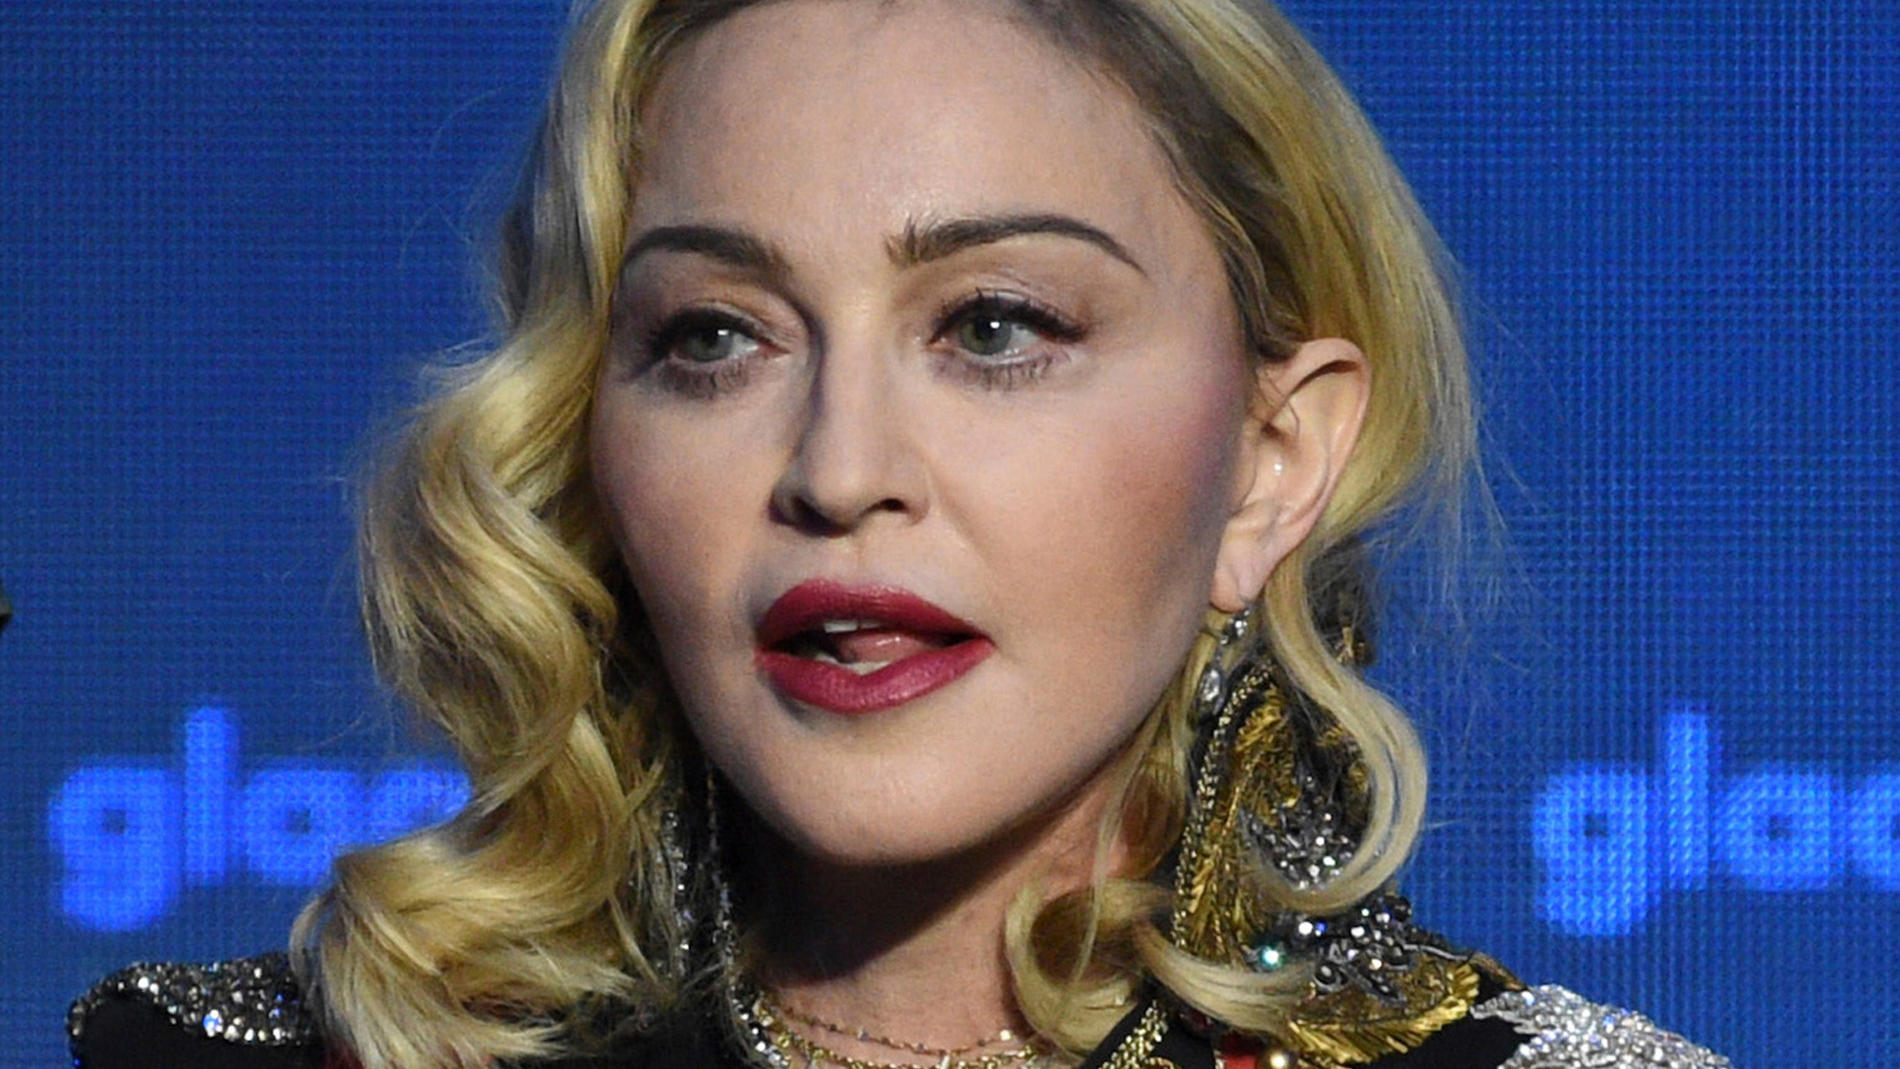 ARCHIV - 05.05.2019, USA, New York: Madonna, US-amerikanische Sängerin, nimmt den «Advocate for Change-Award» bei den 30. jährlichen GLAAD Media Awards entgegen. (zu dpa: «Madonna kündigt Zusatzkonzerte an») Foto: Evan Agostini/Invision/AP/dpa +++ dp